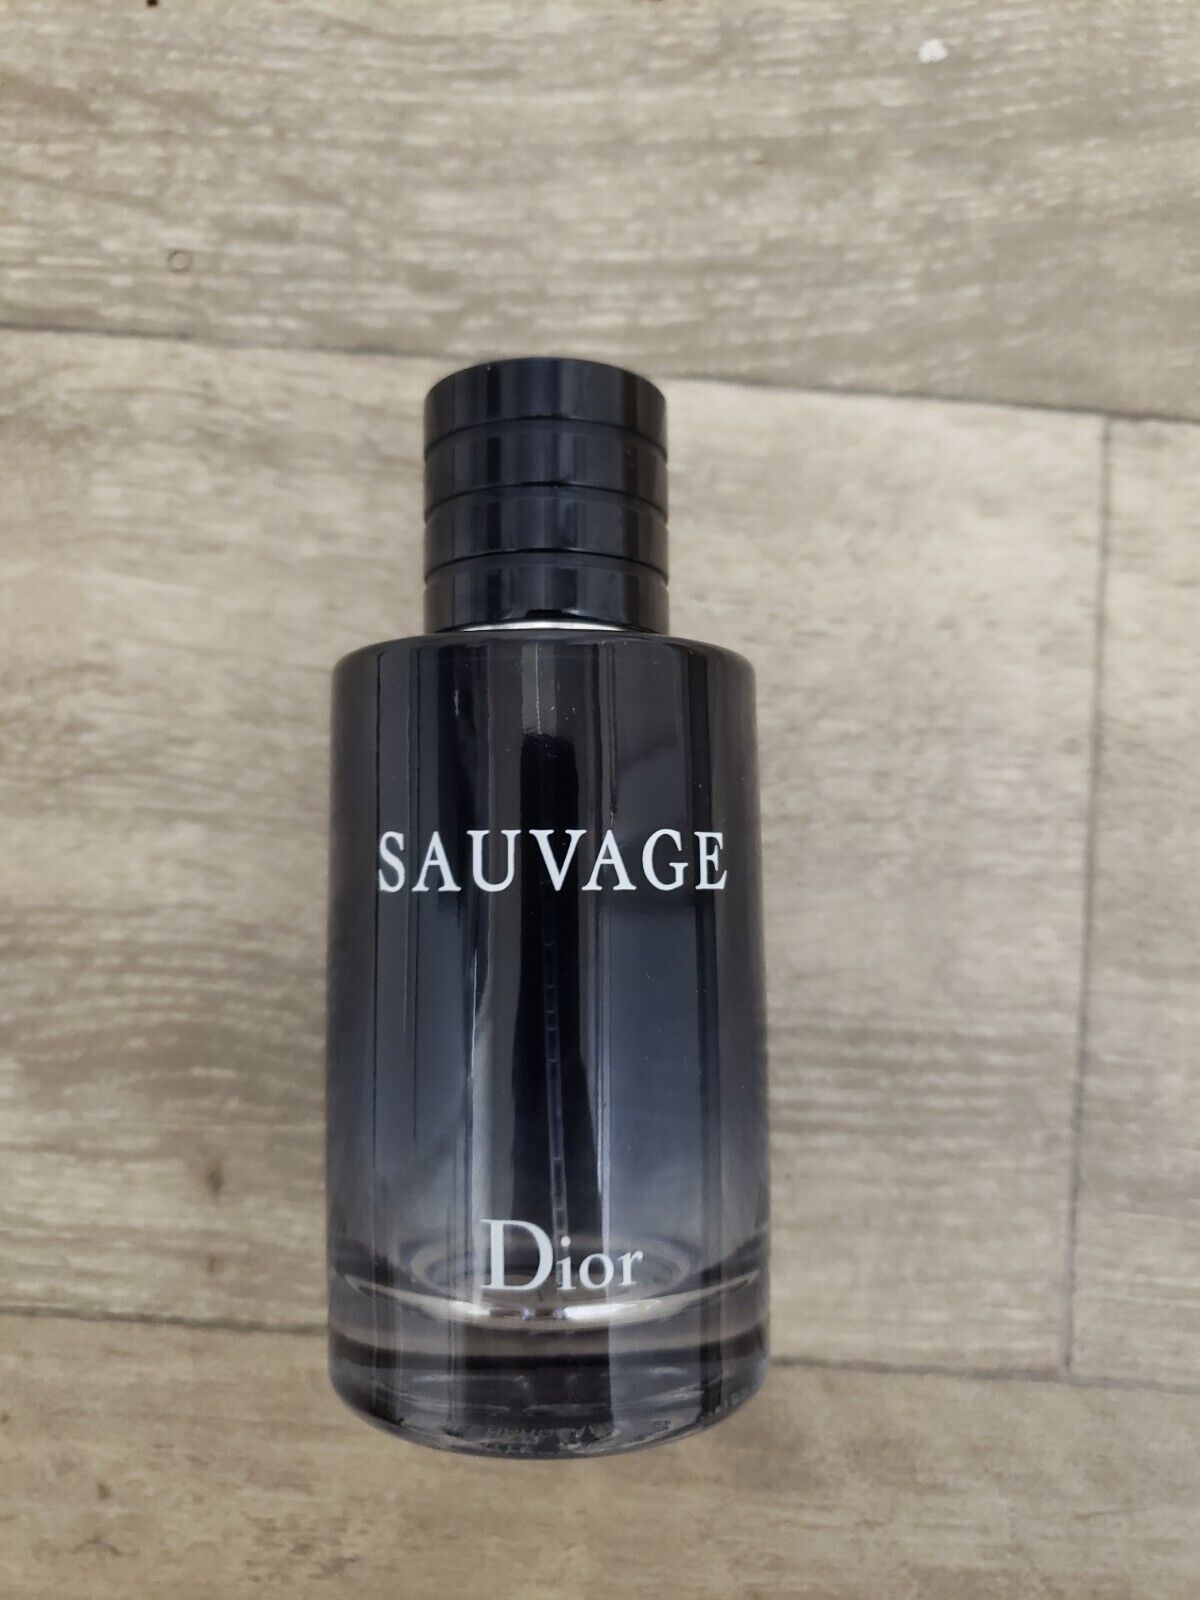 Sauvage Christian Dior, Eau De Toilette Empty Bottle 100 ml 3.4 Fl Oz France